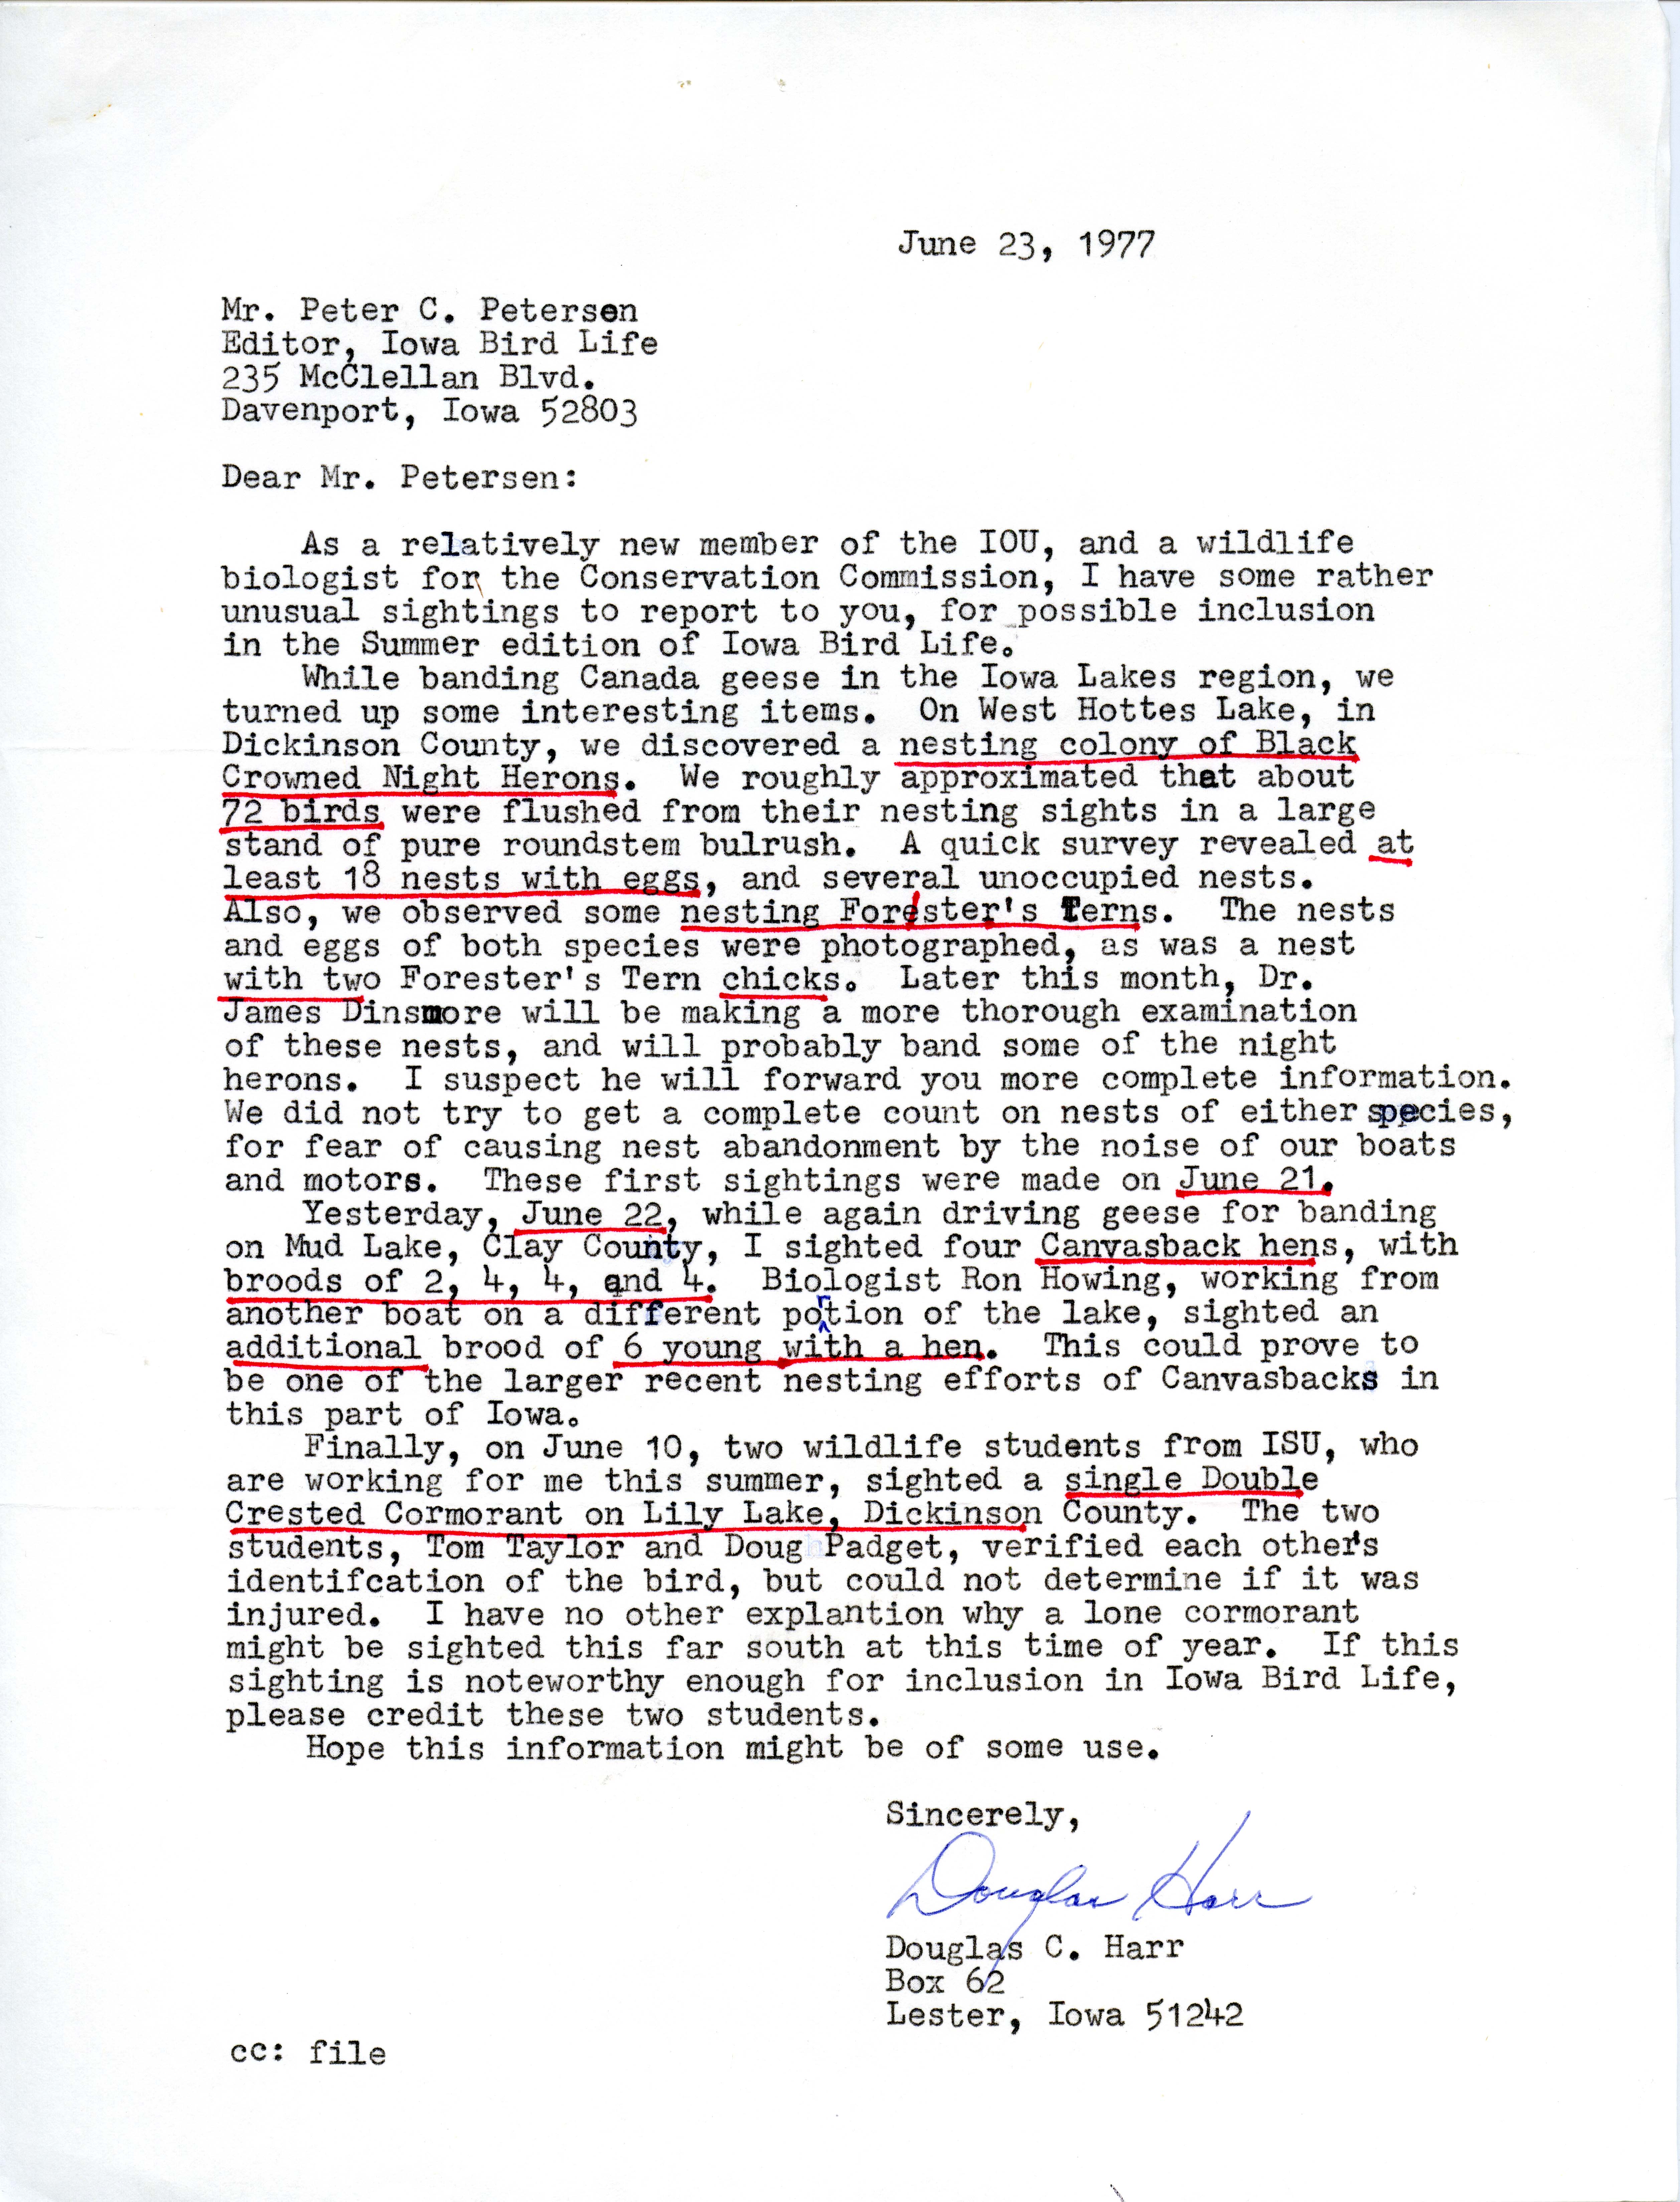  Douglas C. Harr letter to Peter C. Petersen regarding bird sightings, June 23, 1977